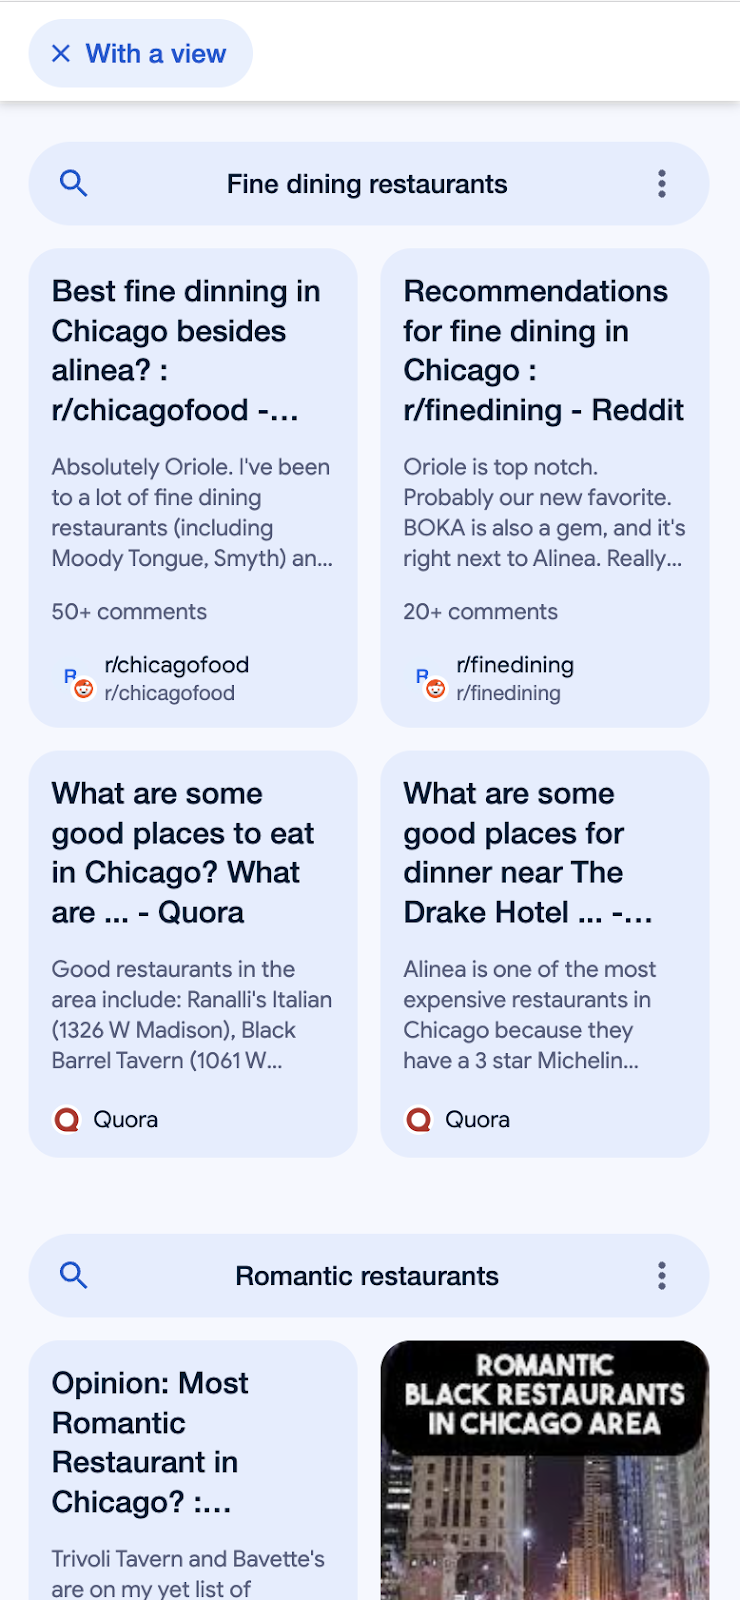 Google Perspectives für die Suchanfrage "fancy restaurants in chicago". Es wurde der Filter "With a view" ausgewählt. Die Optik der Suchergebnisseite hat sich verändert. Jetzt werden in vertikalen blauen Rechtecken unterschiedliche Ergebnisse angezeigt und ein deutlicher Unterschied zur normalen Suchergebnisseite ist erkennbar.